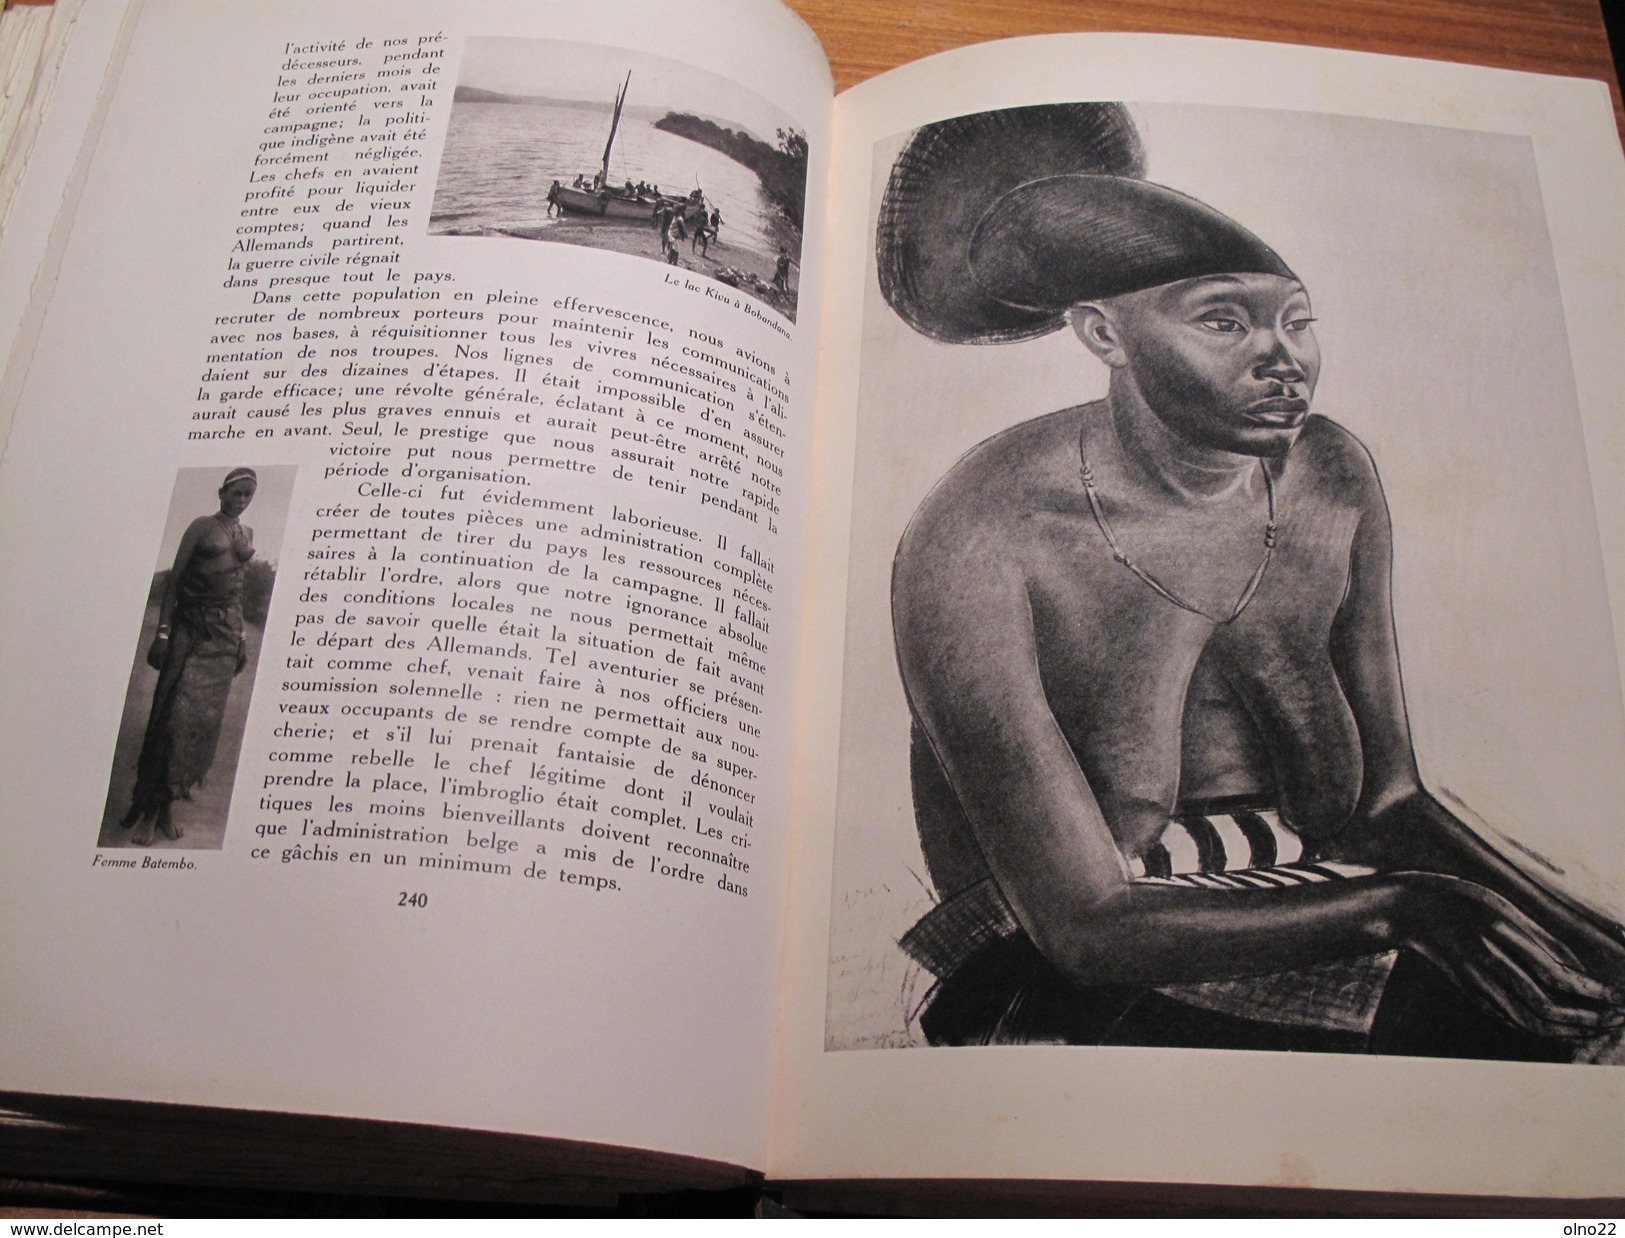 THARAUD Jean et Jérôme, LE MIROIR DU CONGO BELGE, 2 tomes, Bruxelles 1929